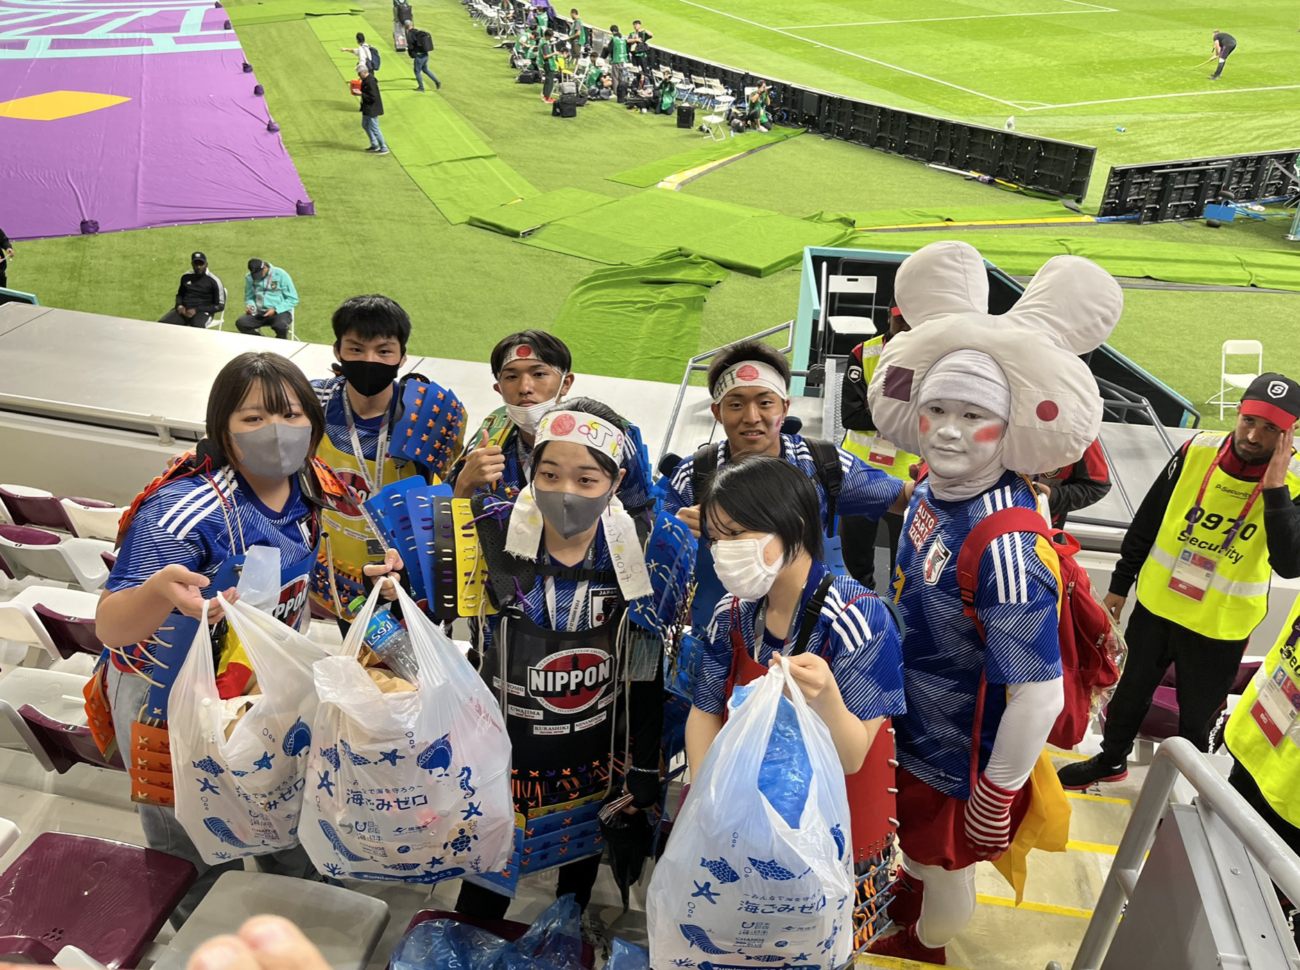 【カタールW杯】『日本財団』が日本人サポーターのゴミ拾い活動を自らのPRに利用し、批判殺到